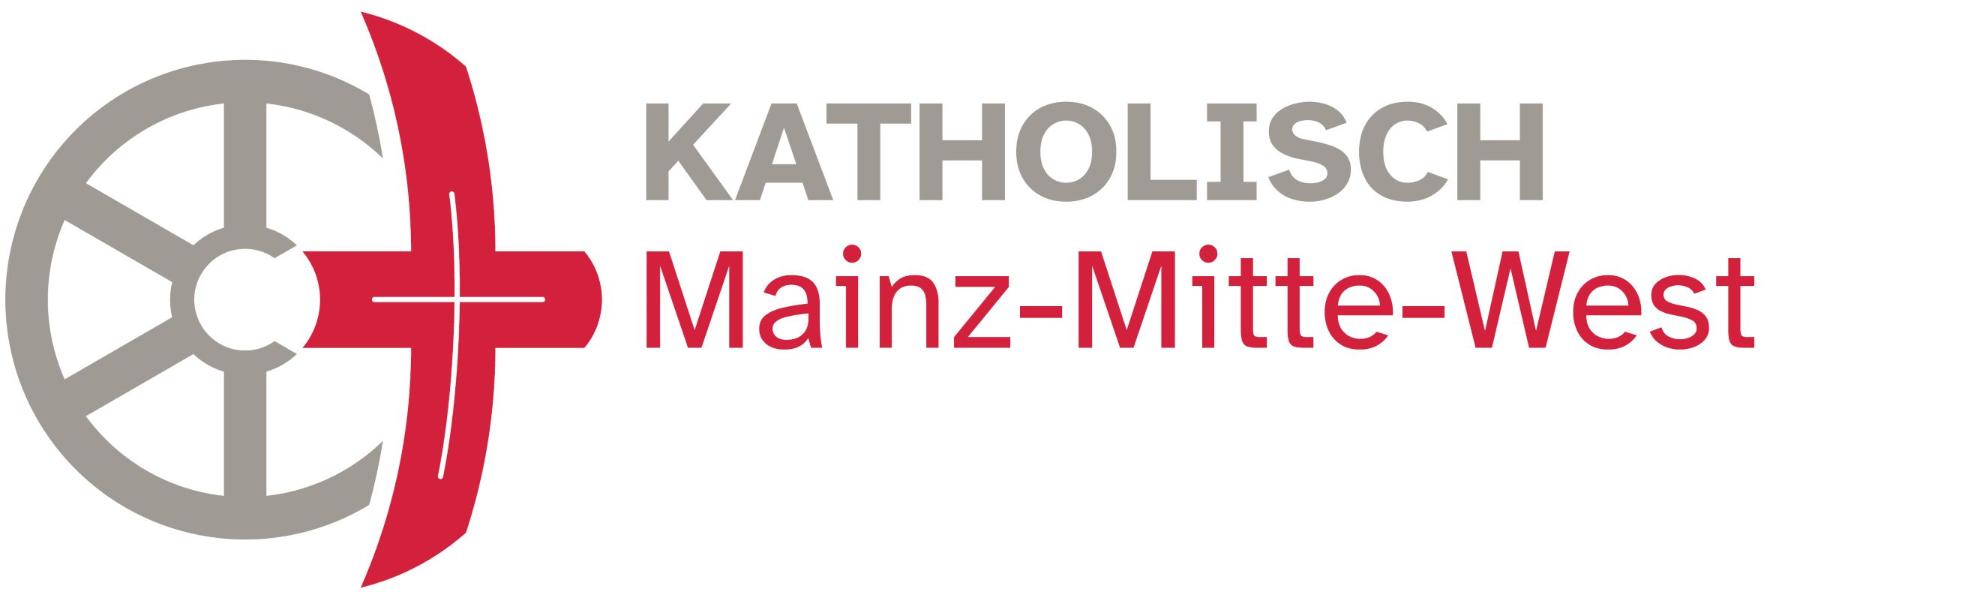 Mainz-Mitte-West_rgb_classic_klein (c) Bistum Mainz